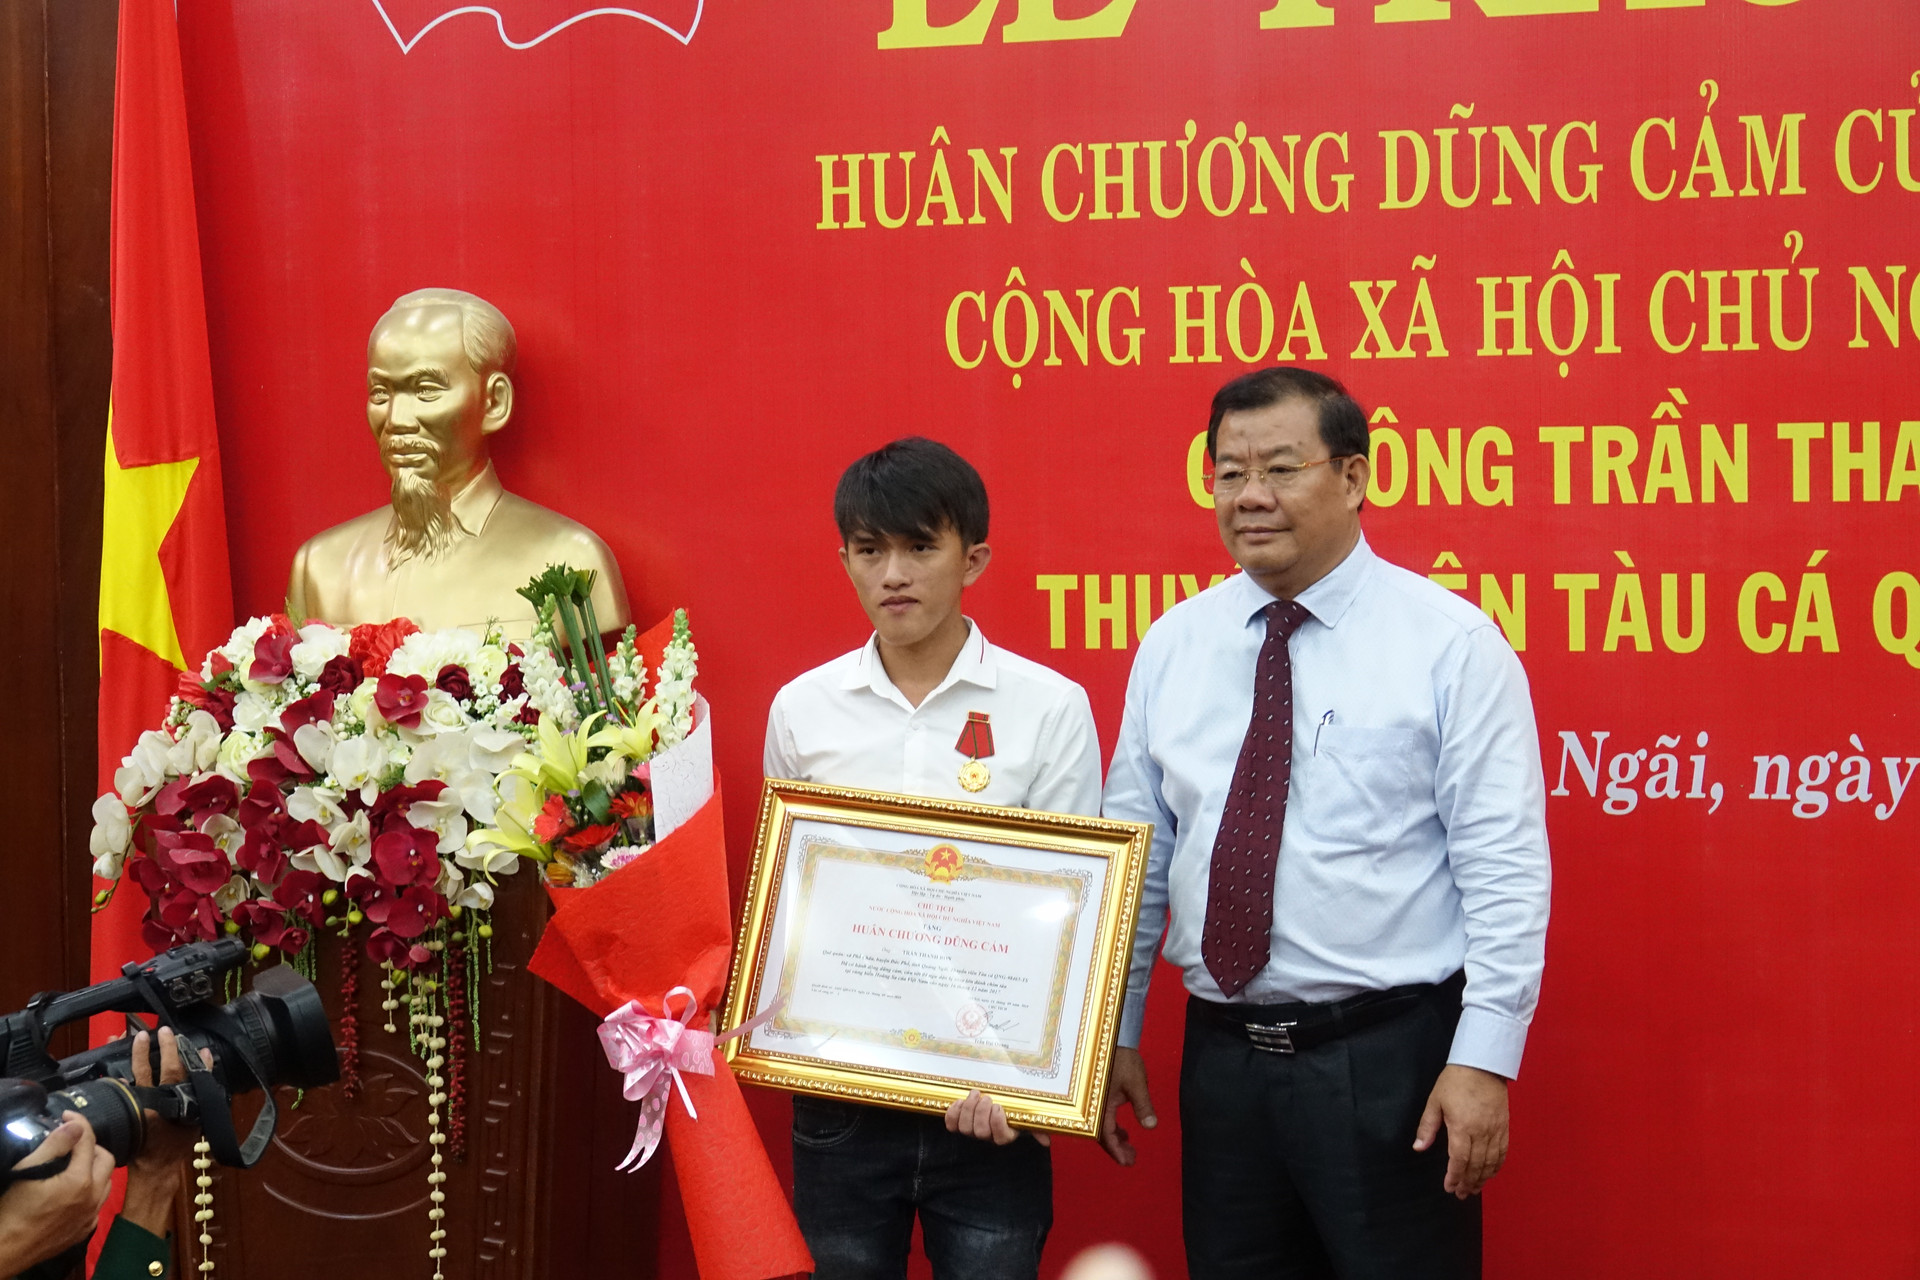 Trao tặng Huân chương dũng cảm của Chủ tịch nước cho ngư dân Quảng Ngãi